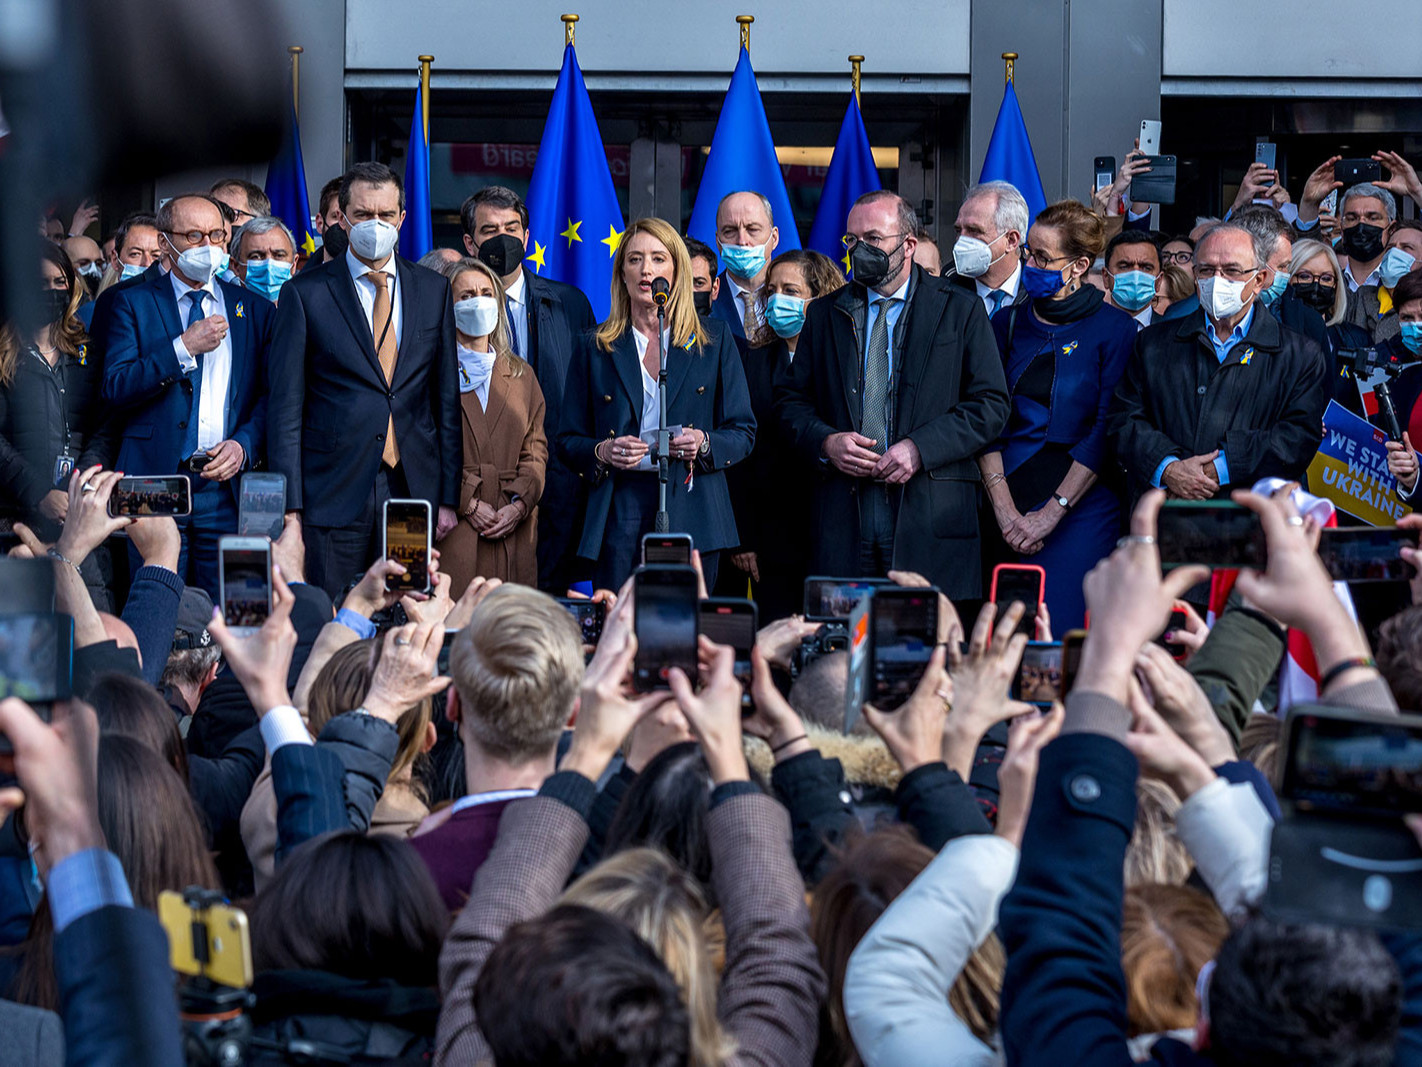 Европын парламент “Украинд Европын холбоонд нэр дэвшигчийн статус” олгохыг уриалжээ